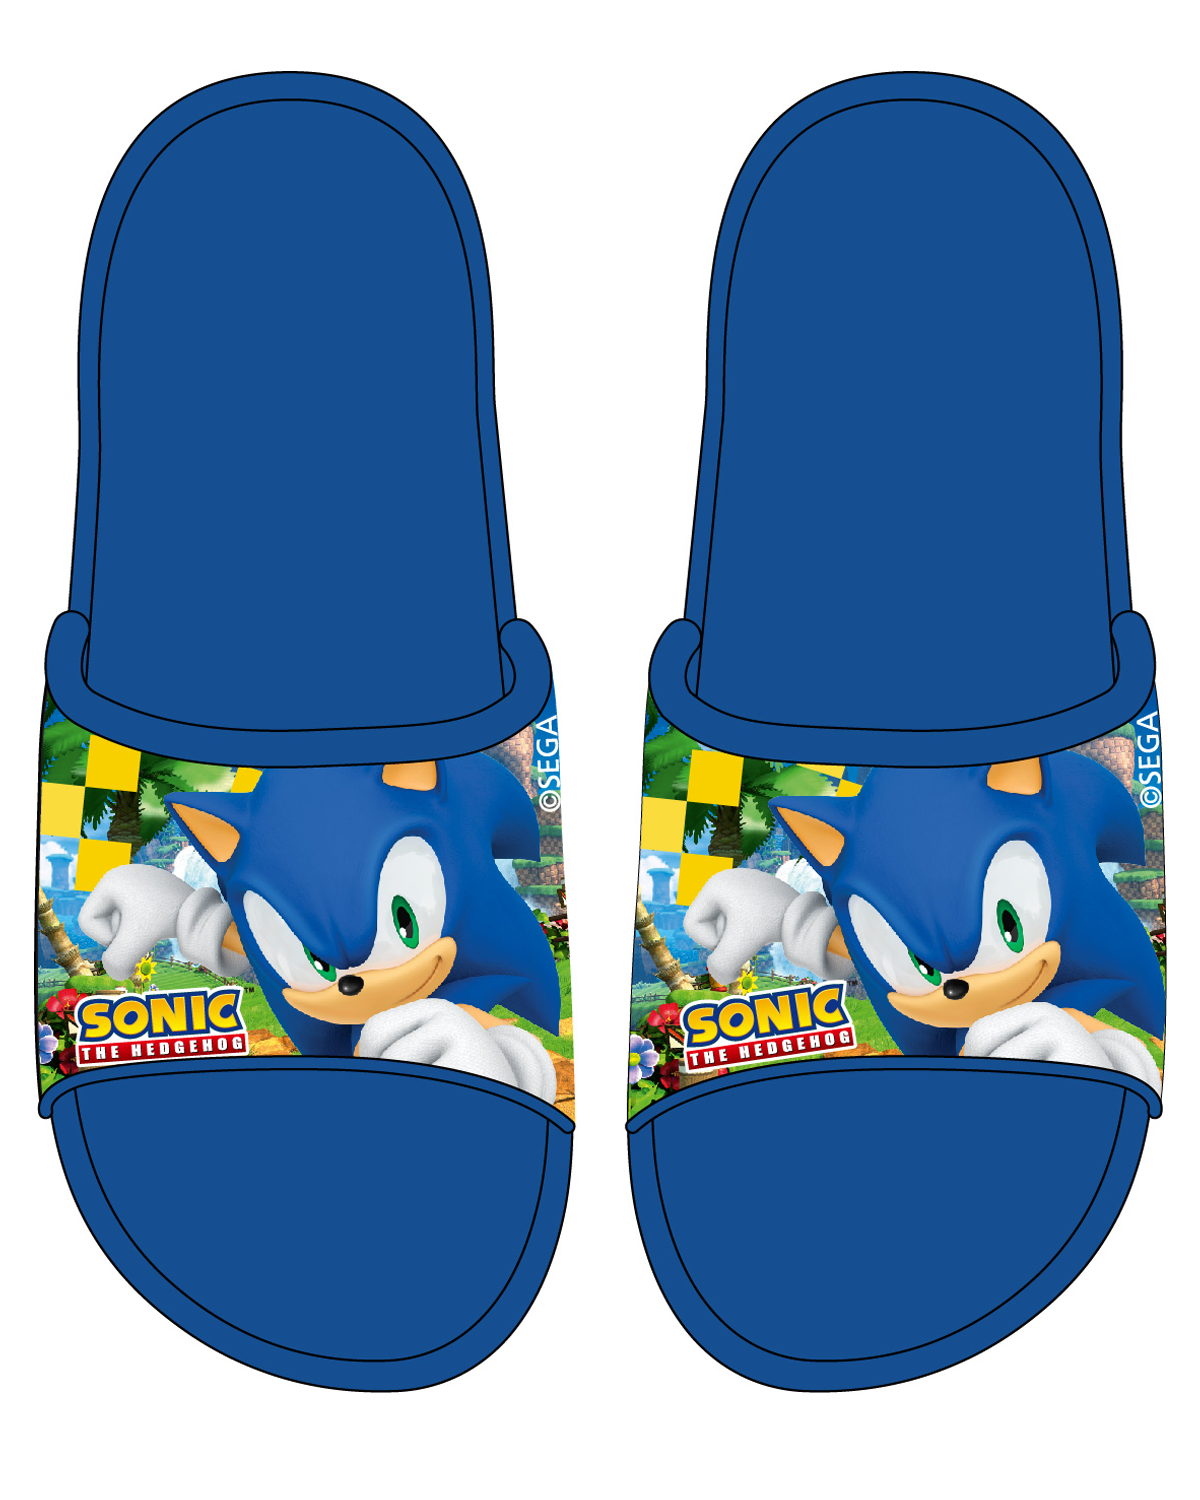 Ježek SONIC - licence Chlapecké pantofle - Ježek Sonic 5251041, modrá Barva: Modrá, Velikost: 33-34